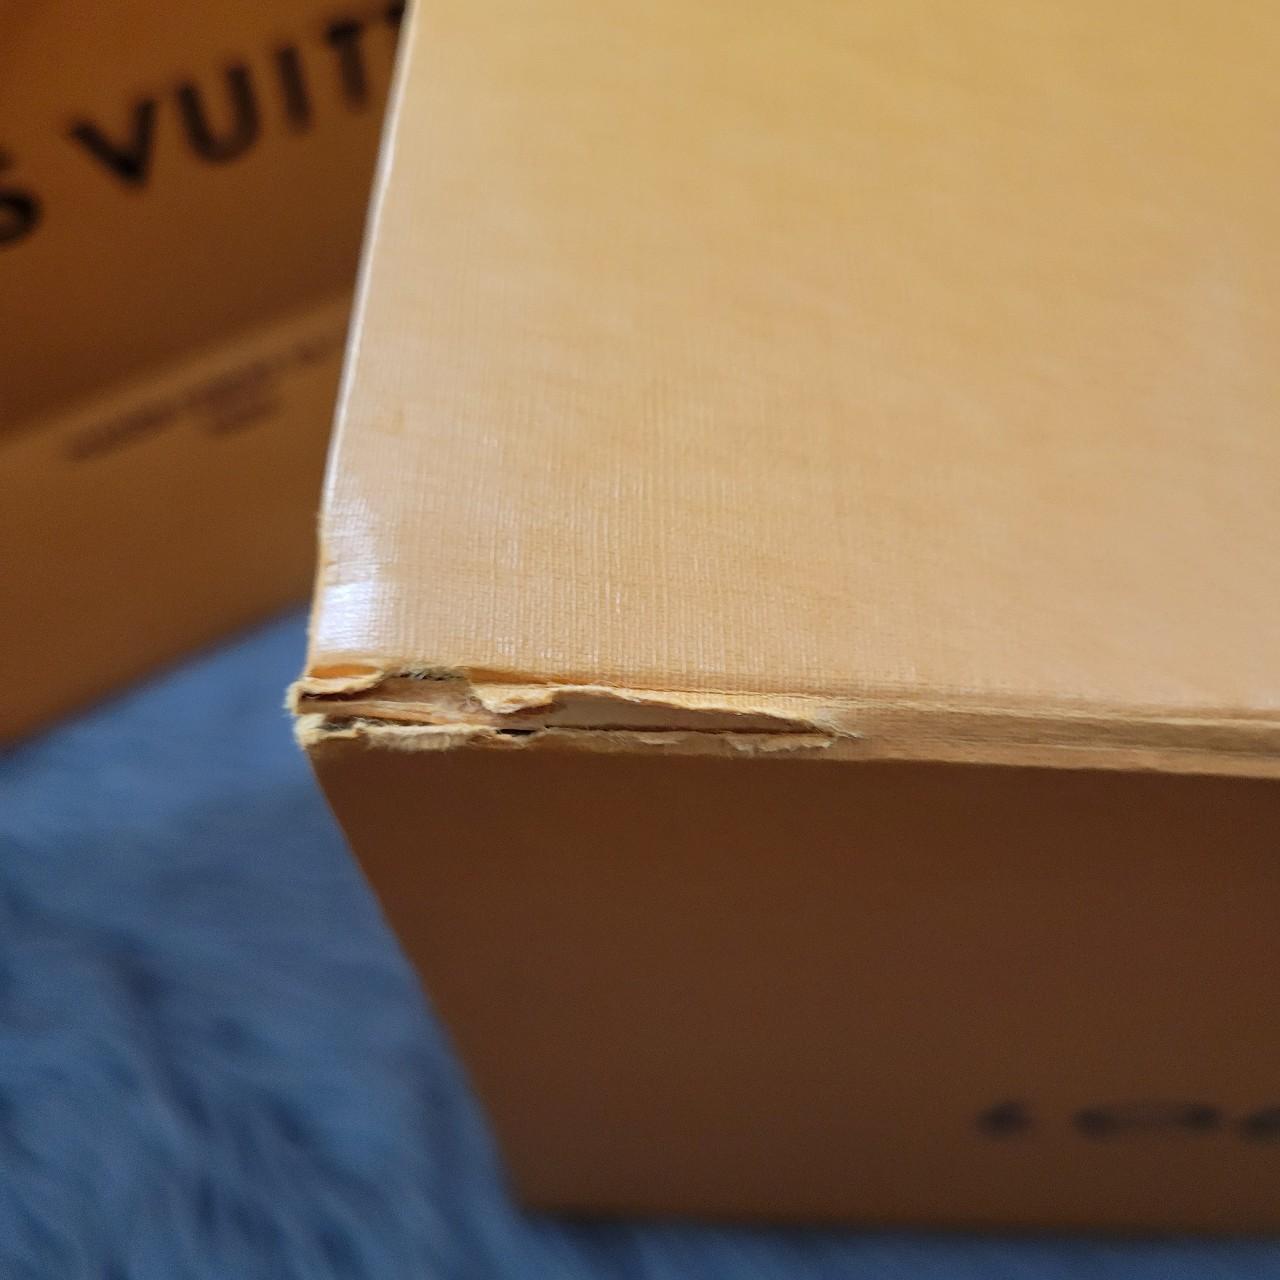 Louis Vuitton empty bag Box 100% authentic empty bag - Depop